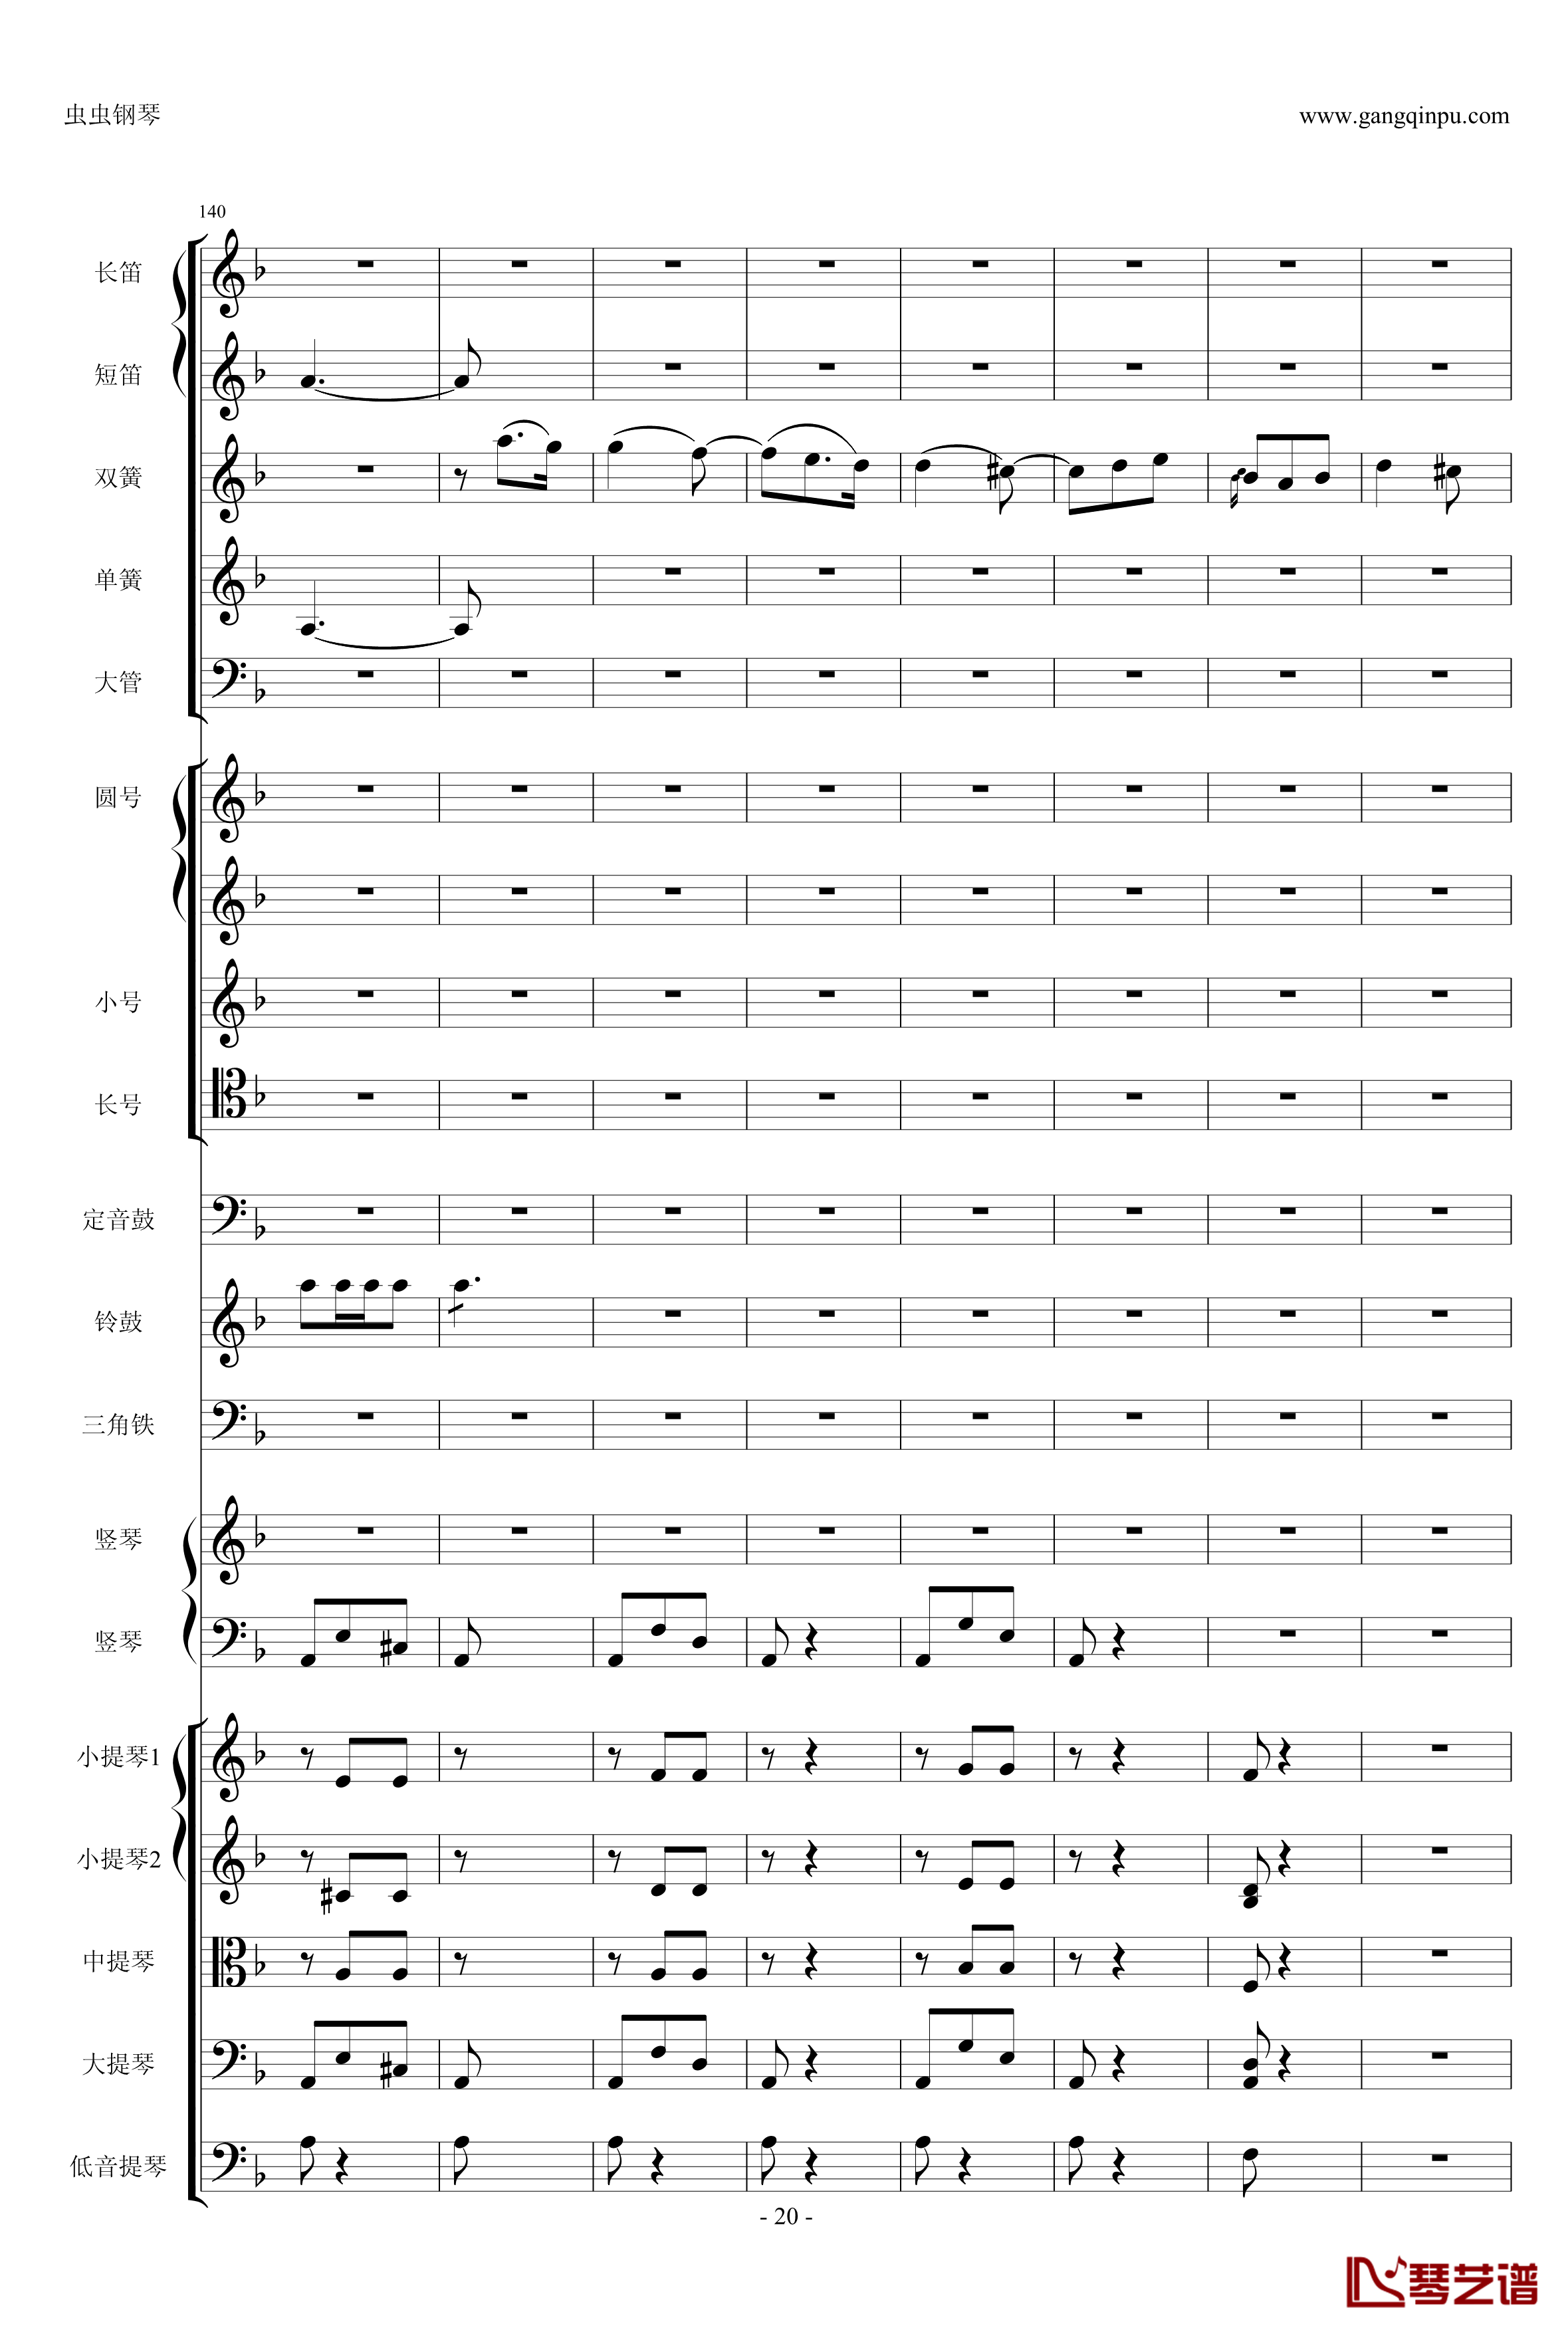 歌剧卡门选段钢琴谱-比才-Bizet- 第四幕间奏曲20